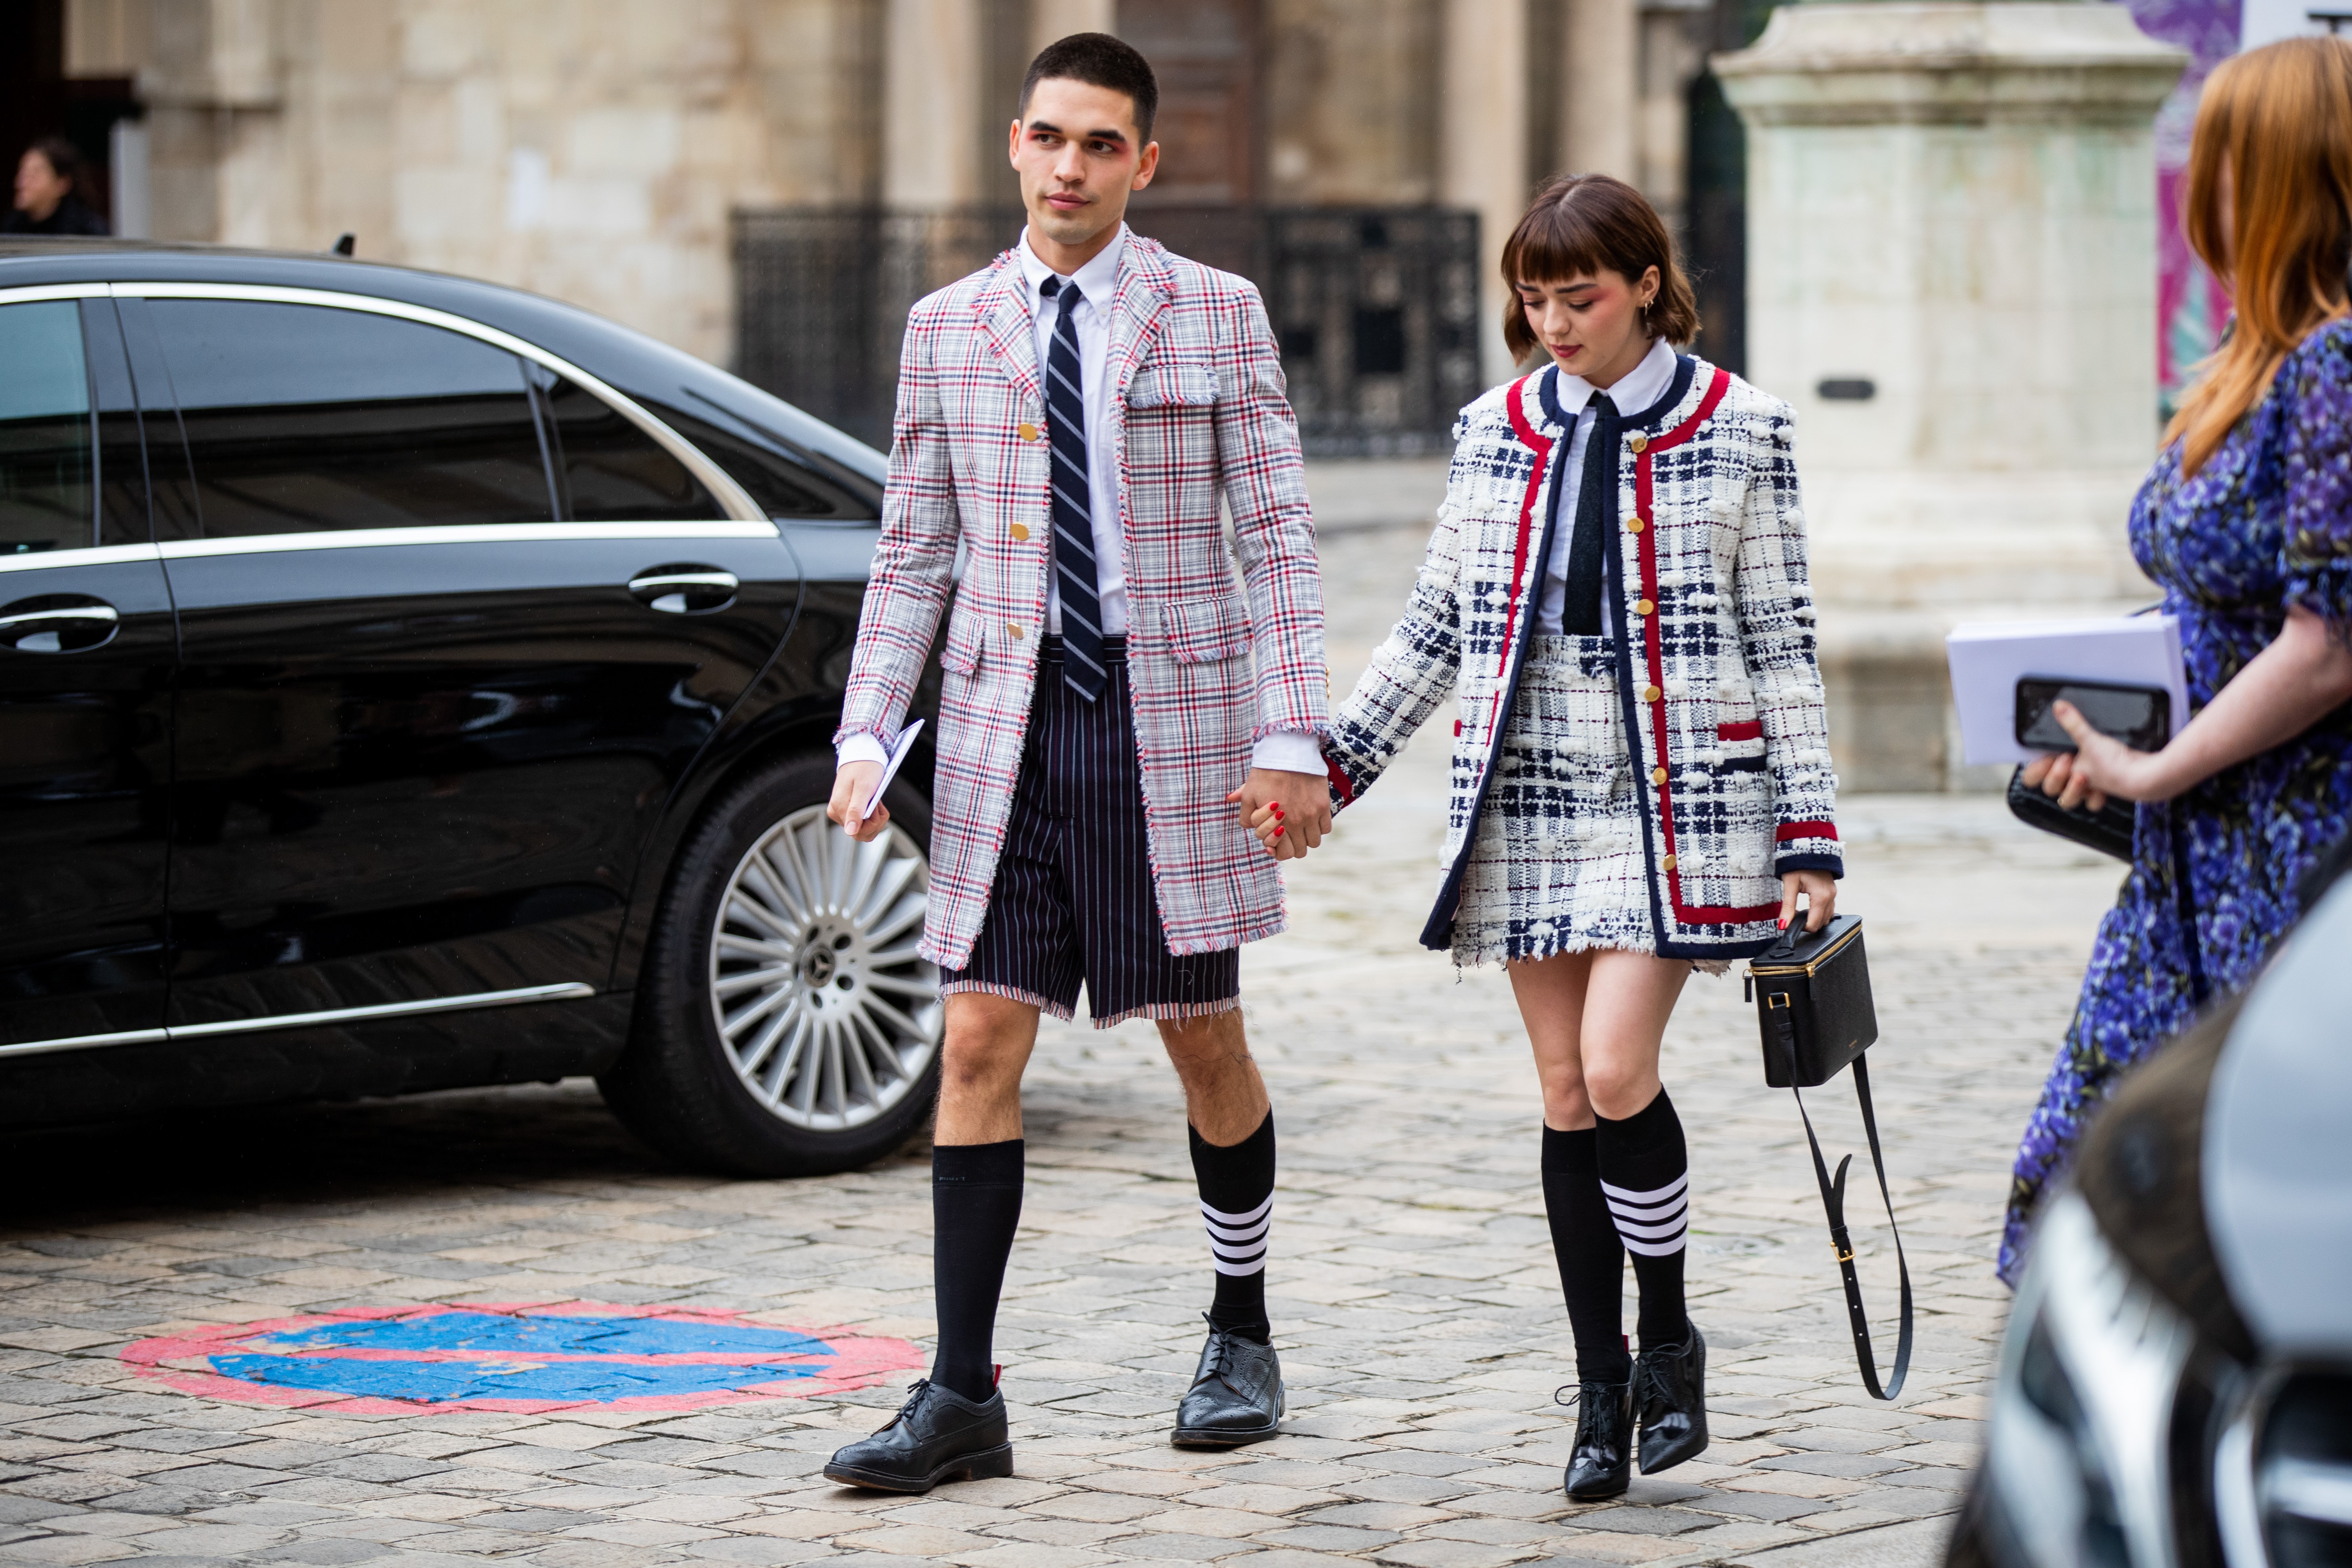 Maisie Williams Reuben Selby Paris Fashion Week Couple Style